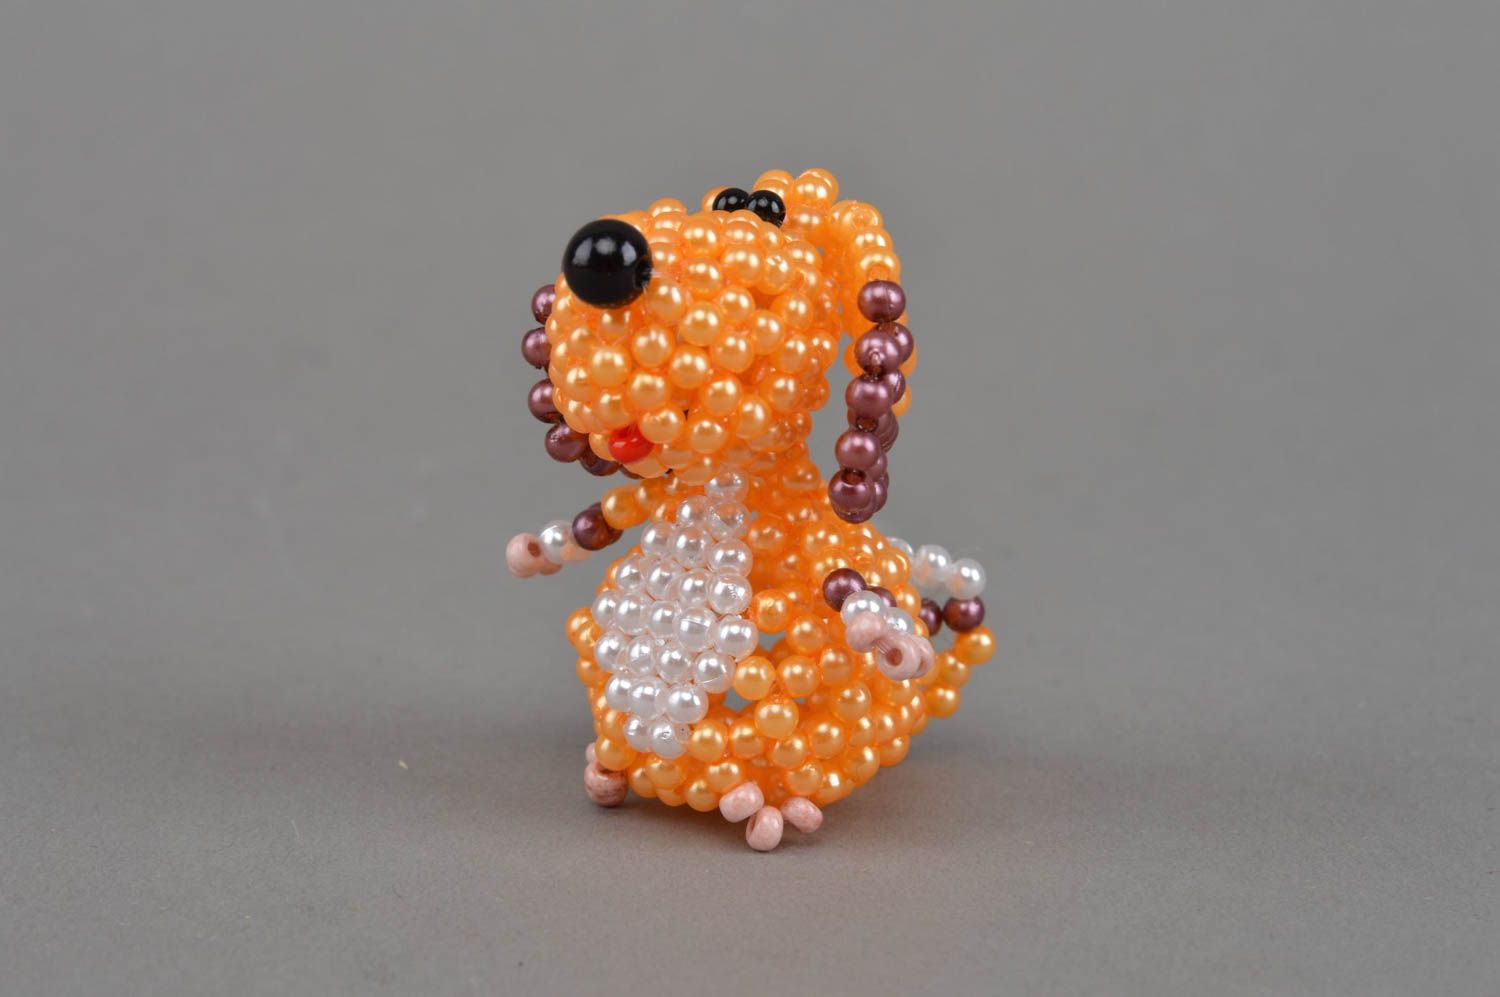 Deko Figurine aus Glasperlen in Orange mit Perlen Hund grell interessant schön foto 2